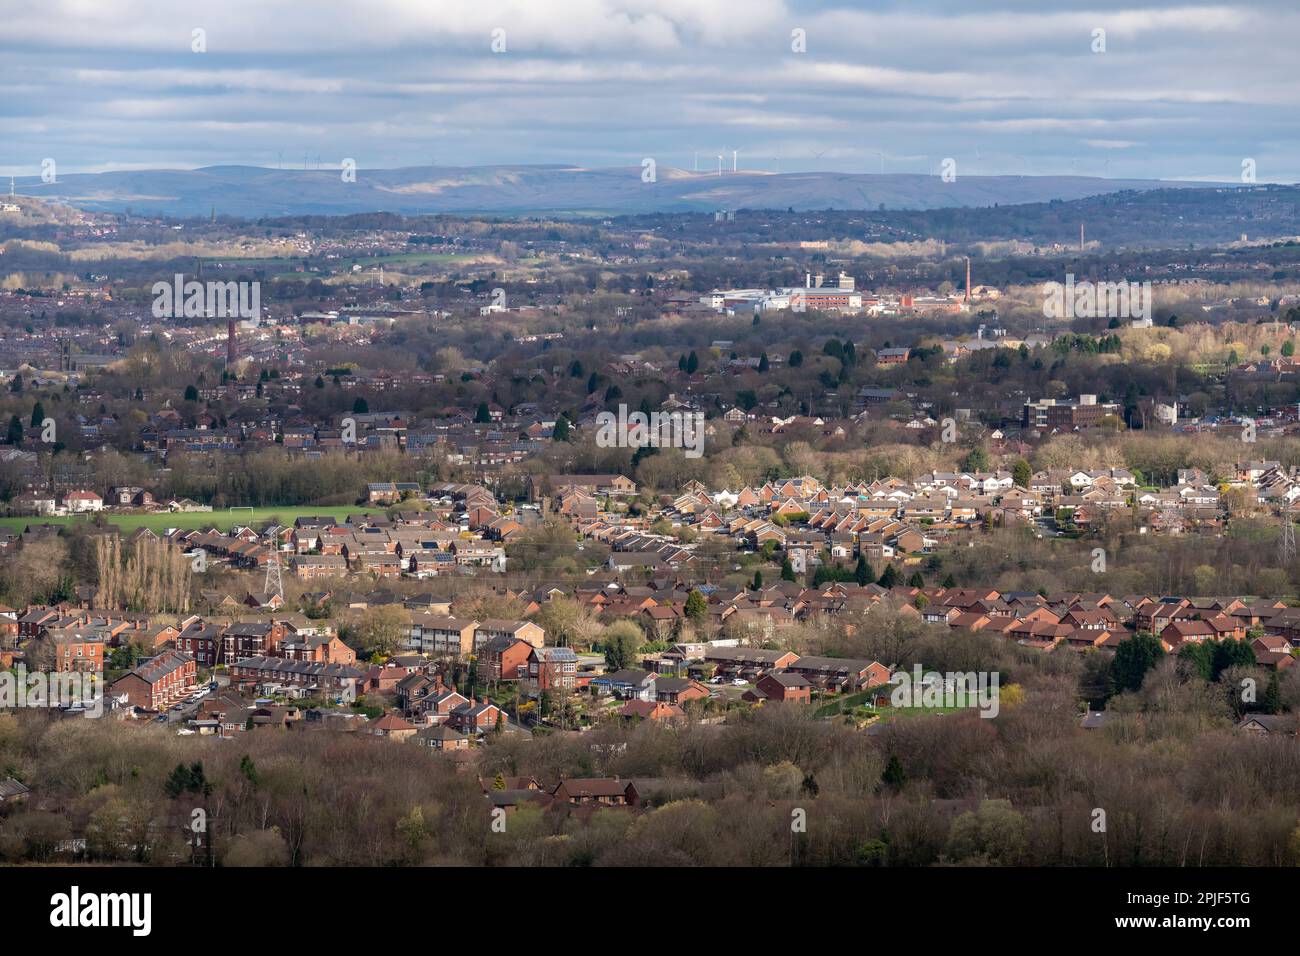 Vue sur la ville de Hyde dans le Grand Manchester, Angleterre avec des éoliennes vues sur les landes au loin. Banque D'Images